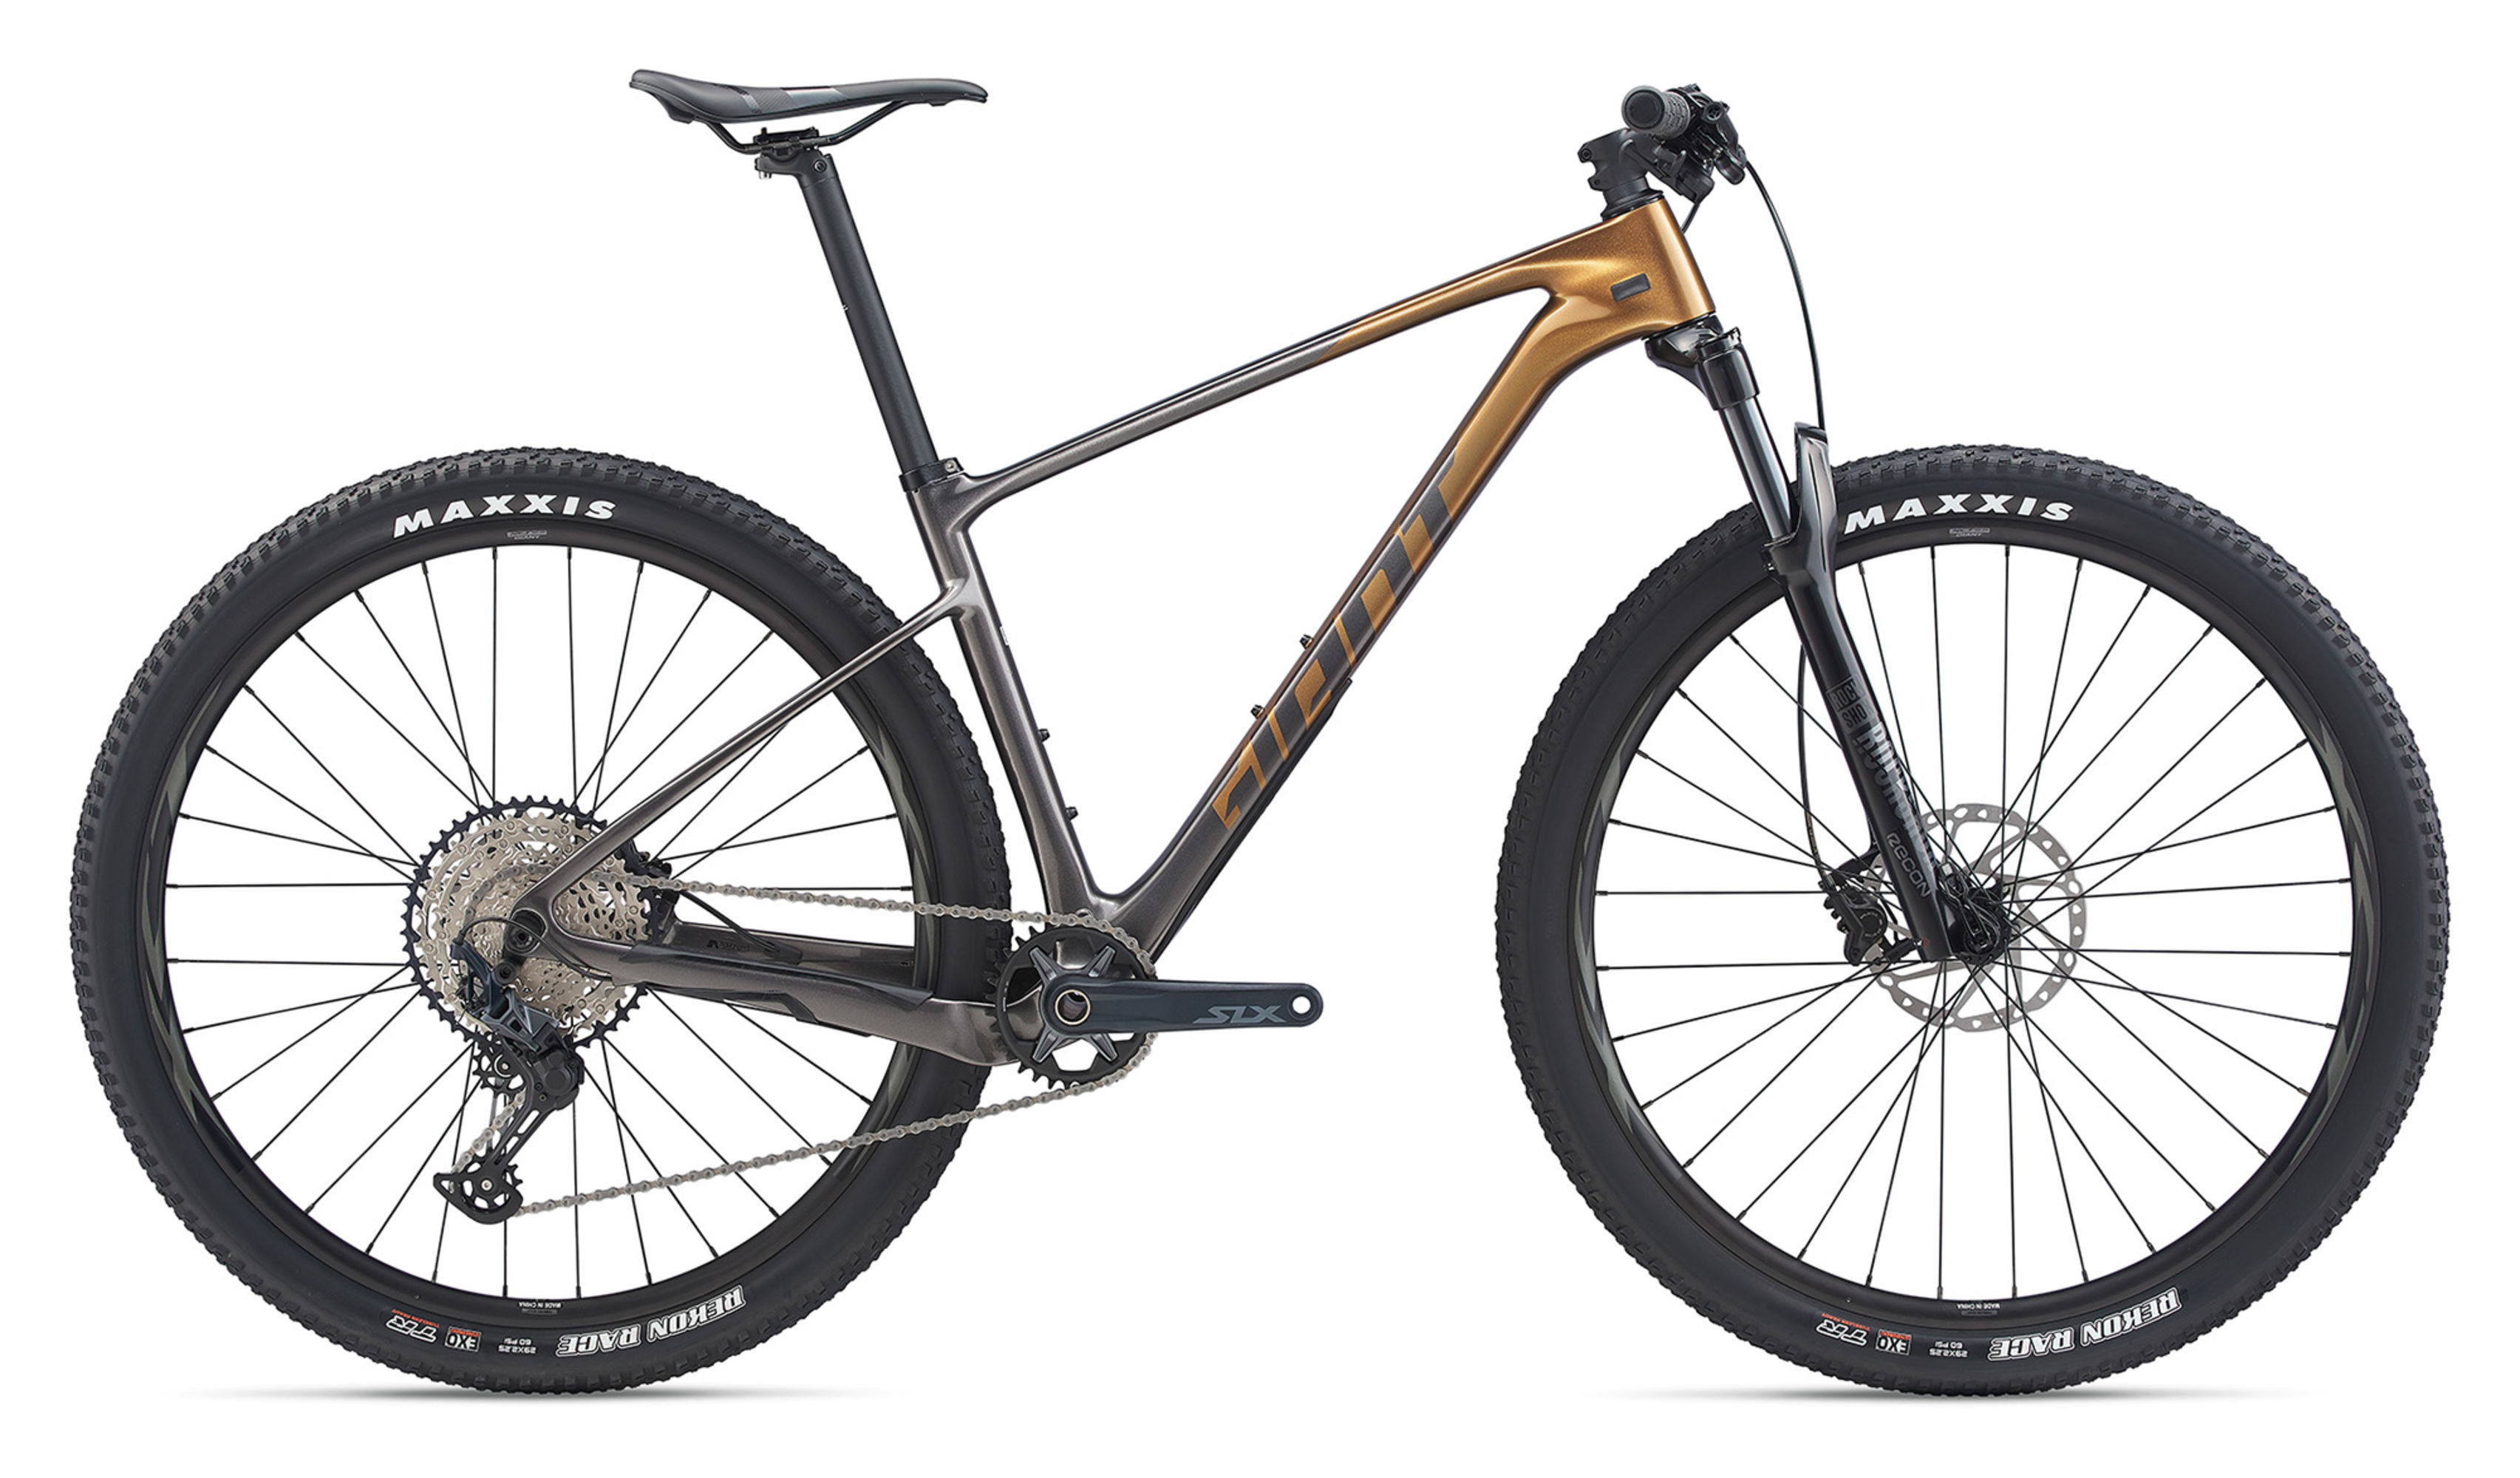  Отзывы о Горном велосипеде Giant XTC Advanced 29 2 2020